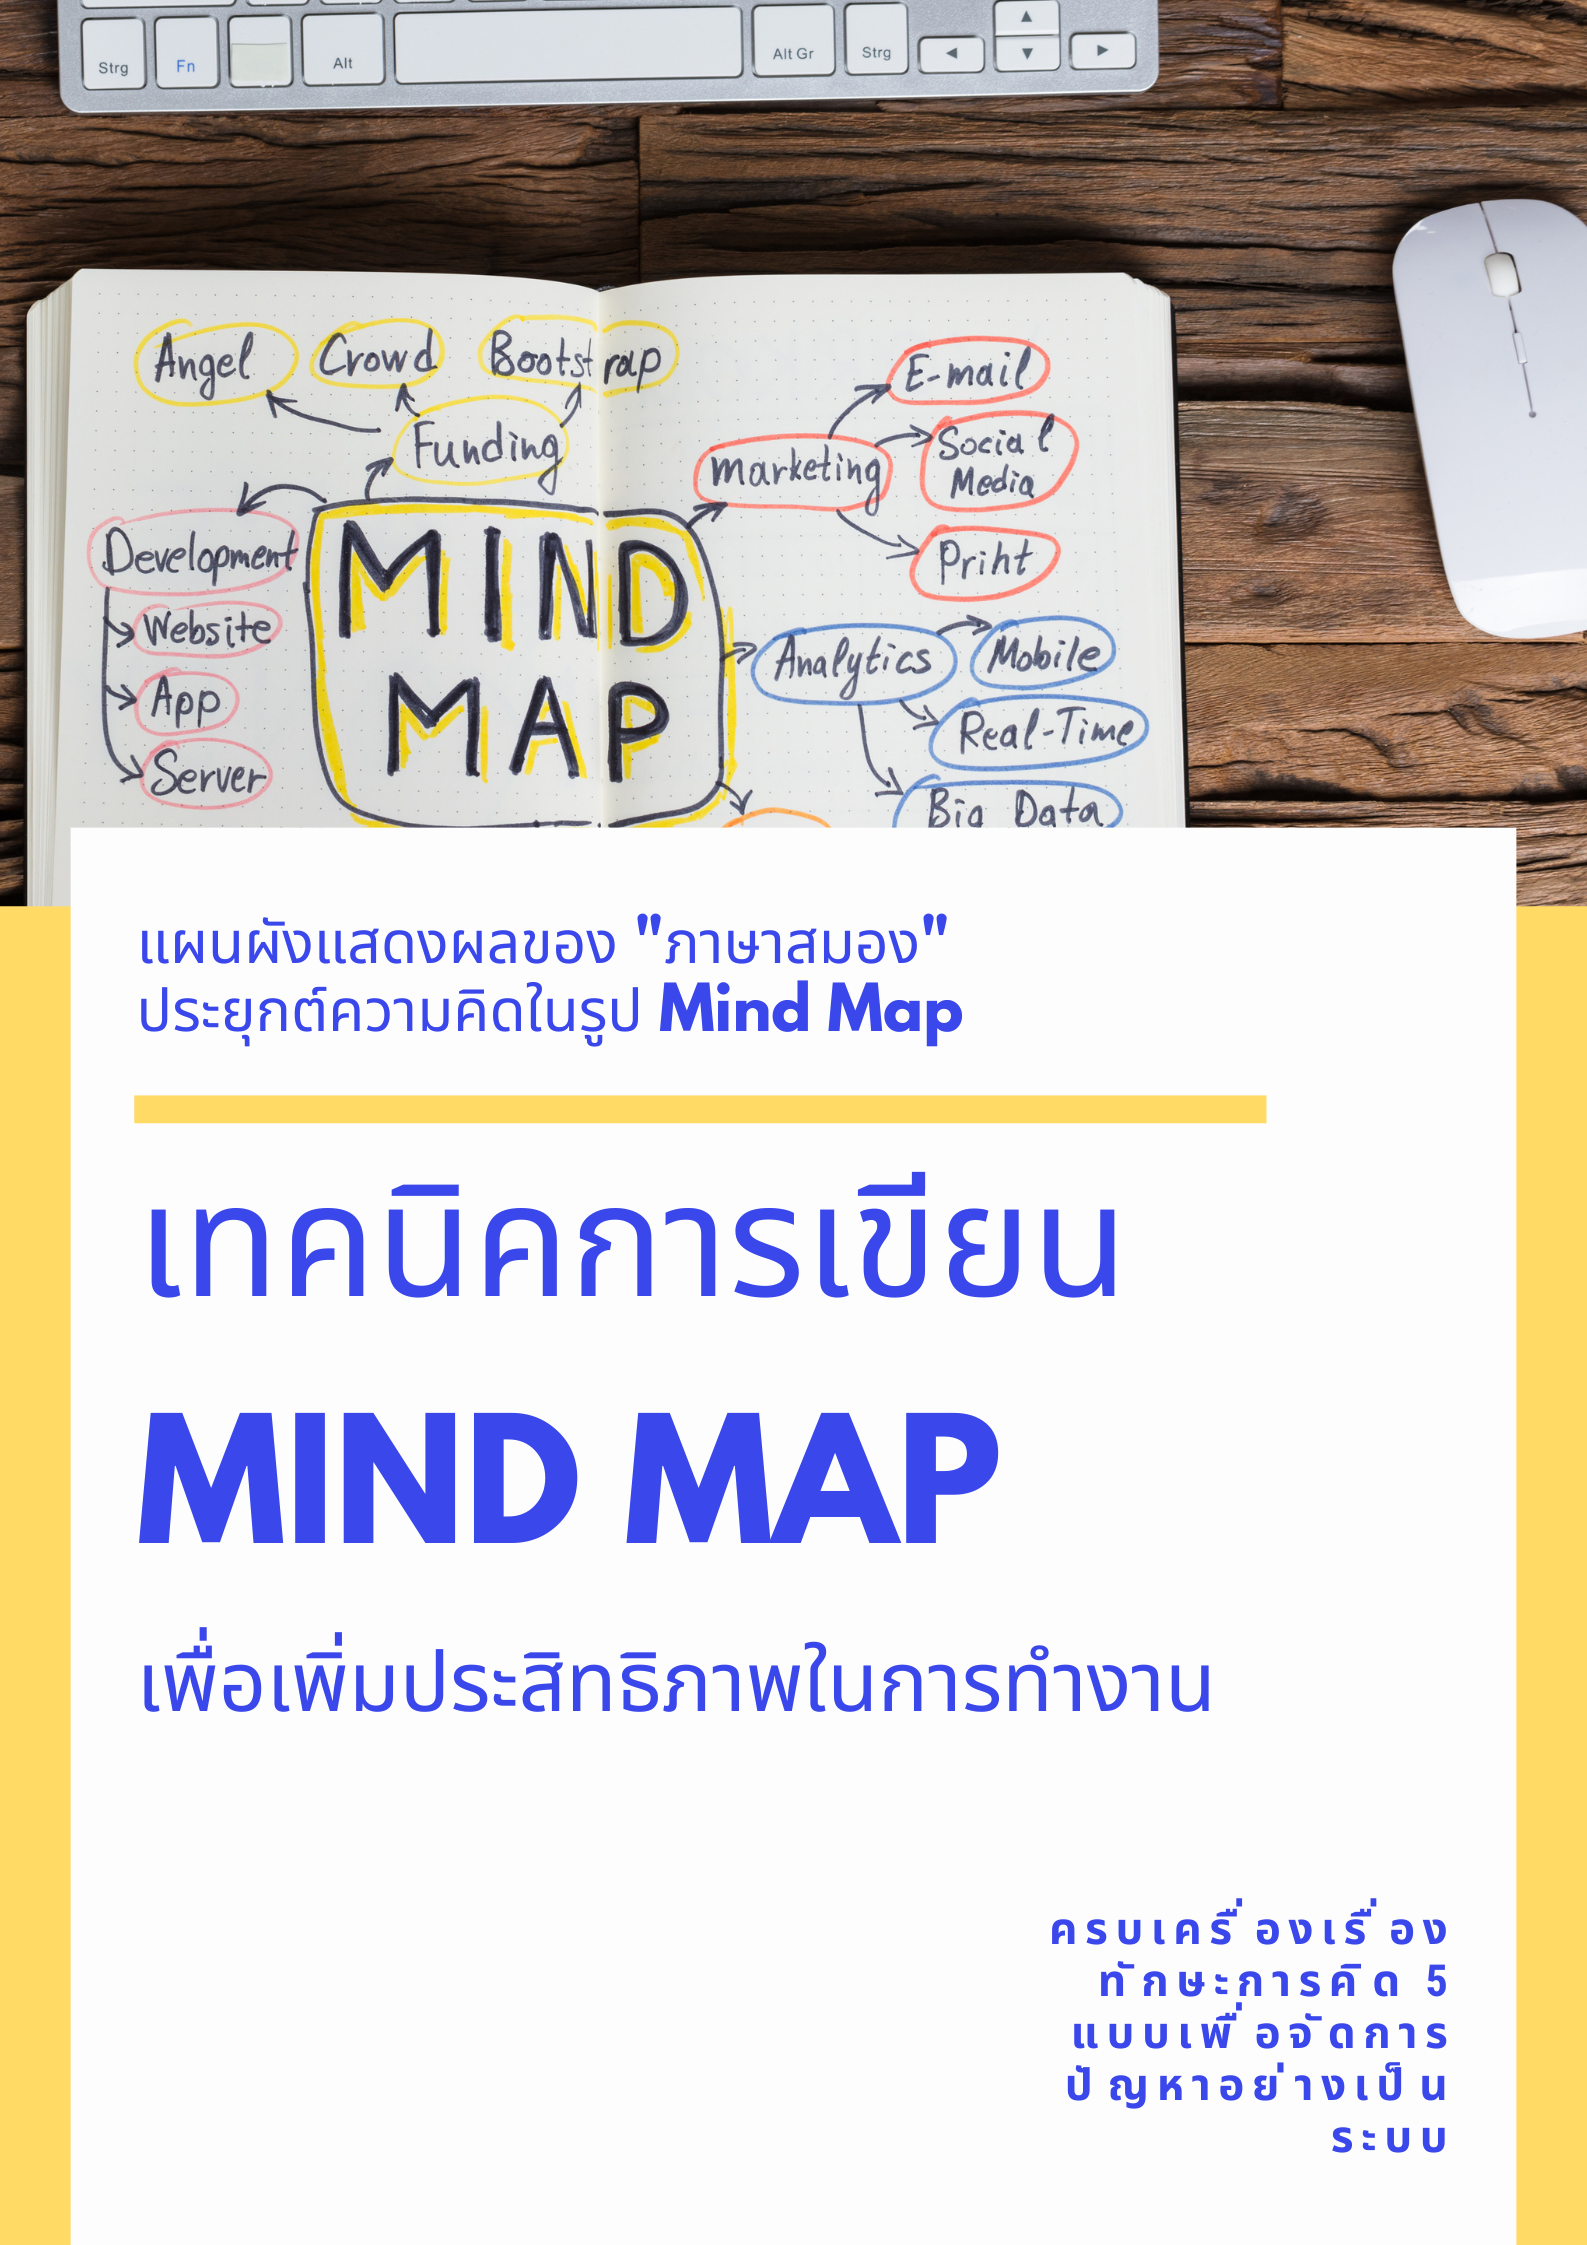 เทคนิคการเขียน Mind Map เพื่อเพิ่มประสิทธิภาพในการทำงาน